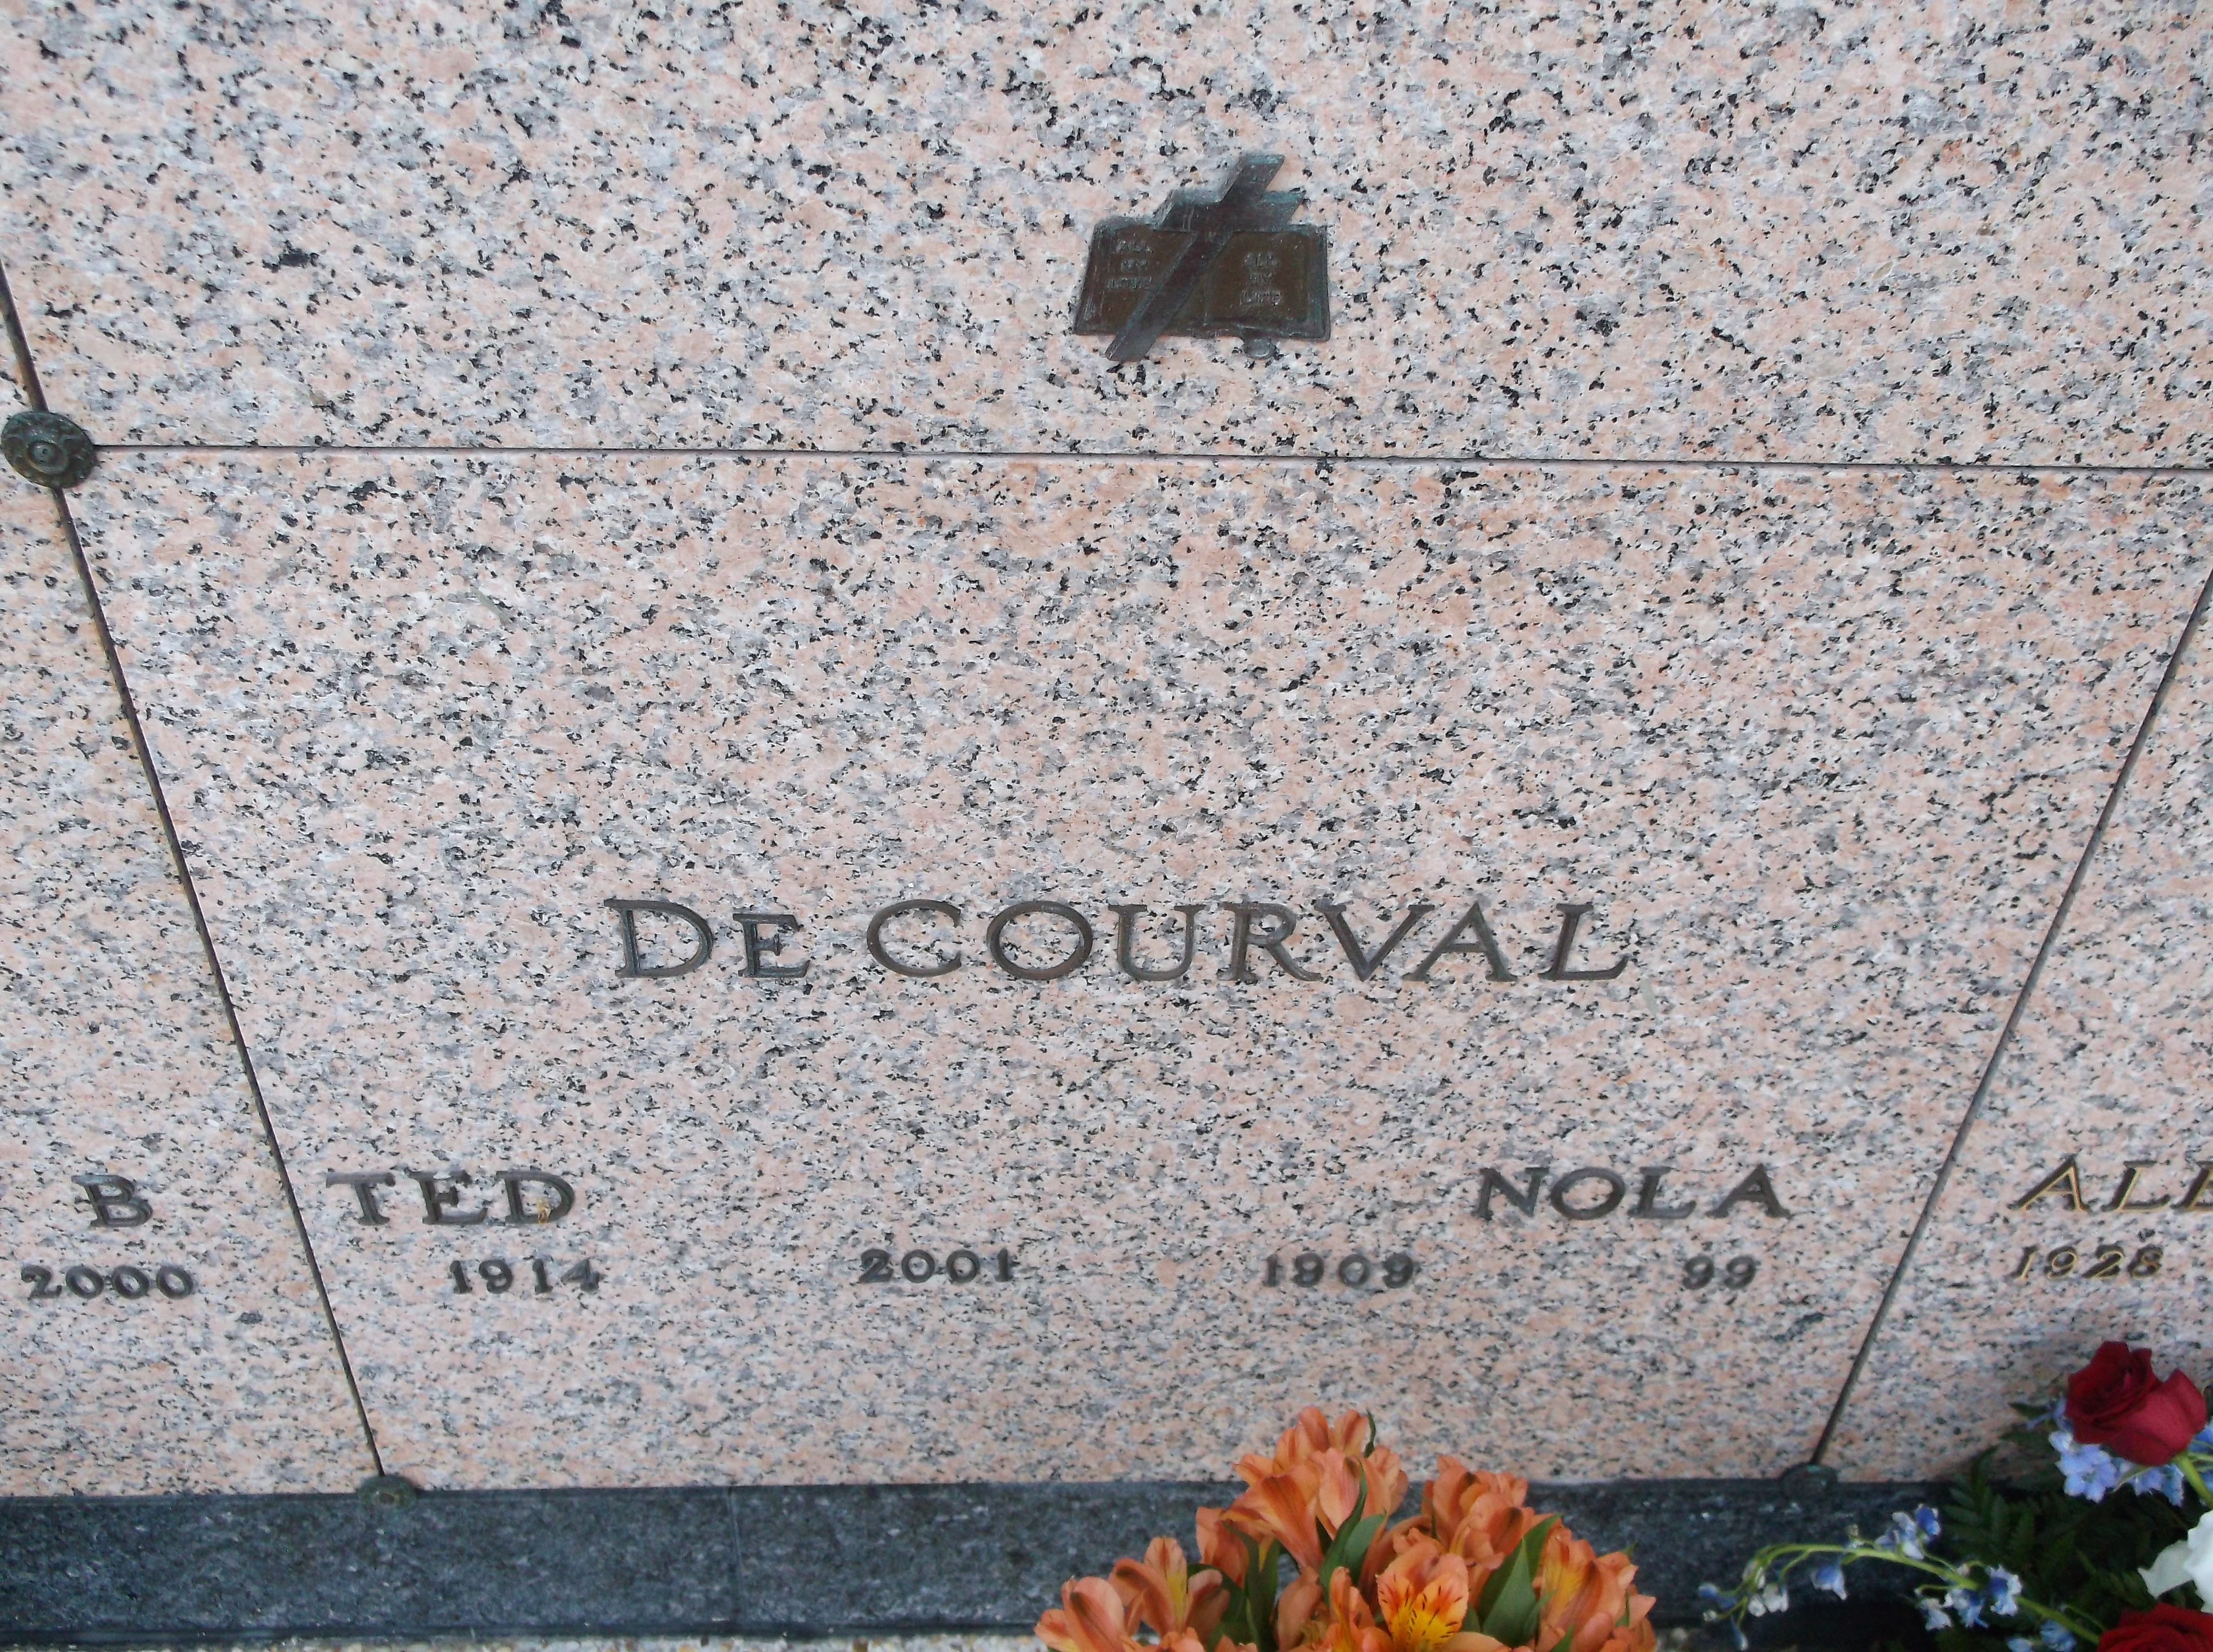 Nola De Courval